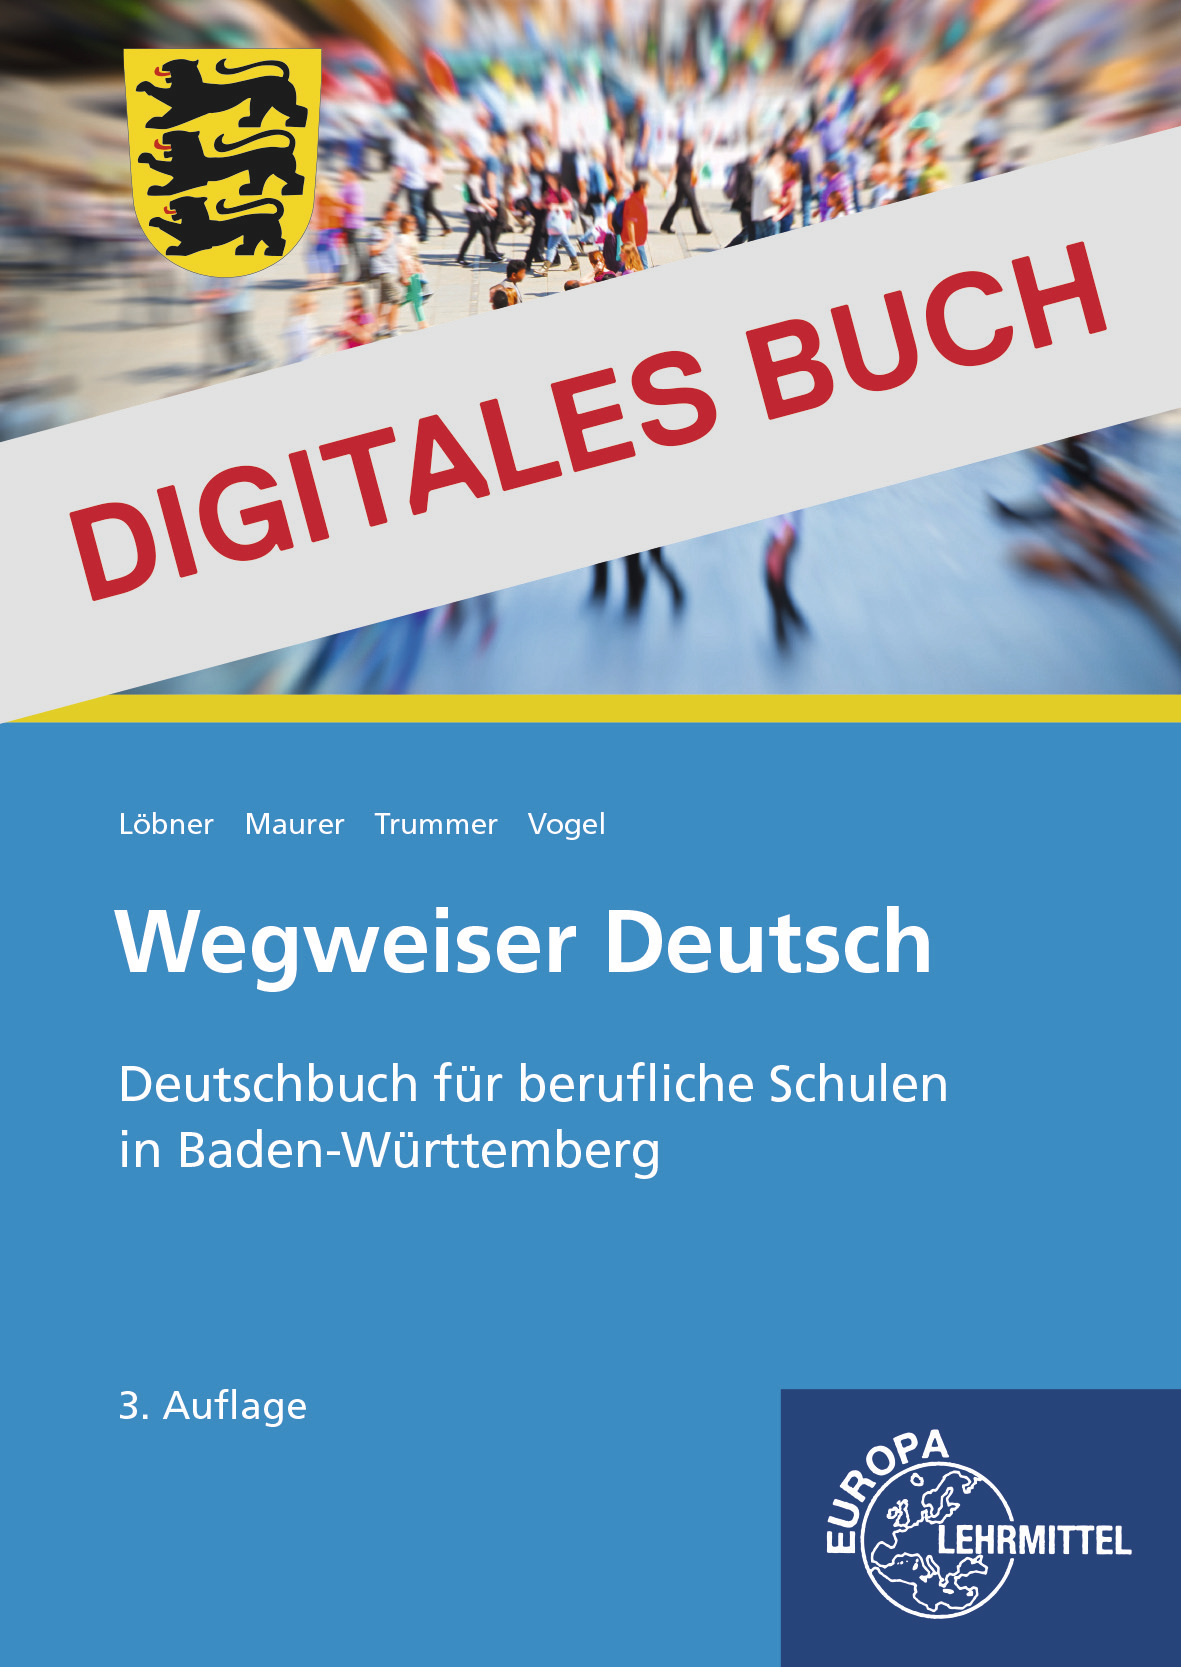 Wegweiser Deutsch - Deutschbuch für berufliche Schulen in BW - Digitales Buch